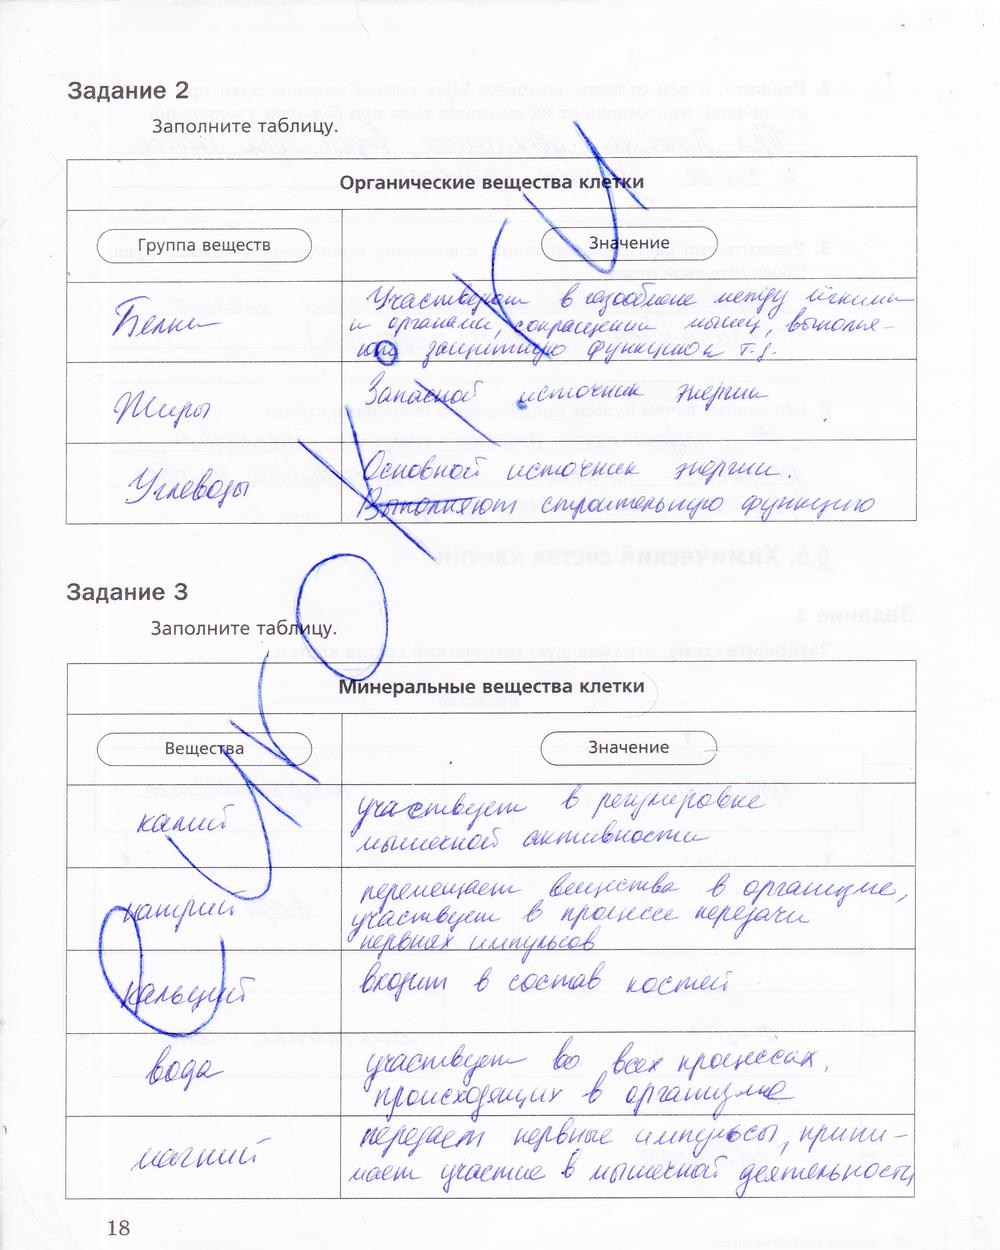 гдз 5 класс рабочая тетрадь страница 18 биология Корнилова, Николаев